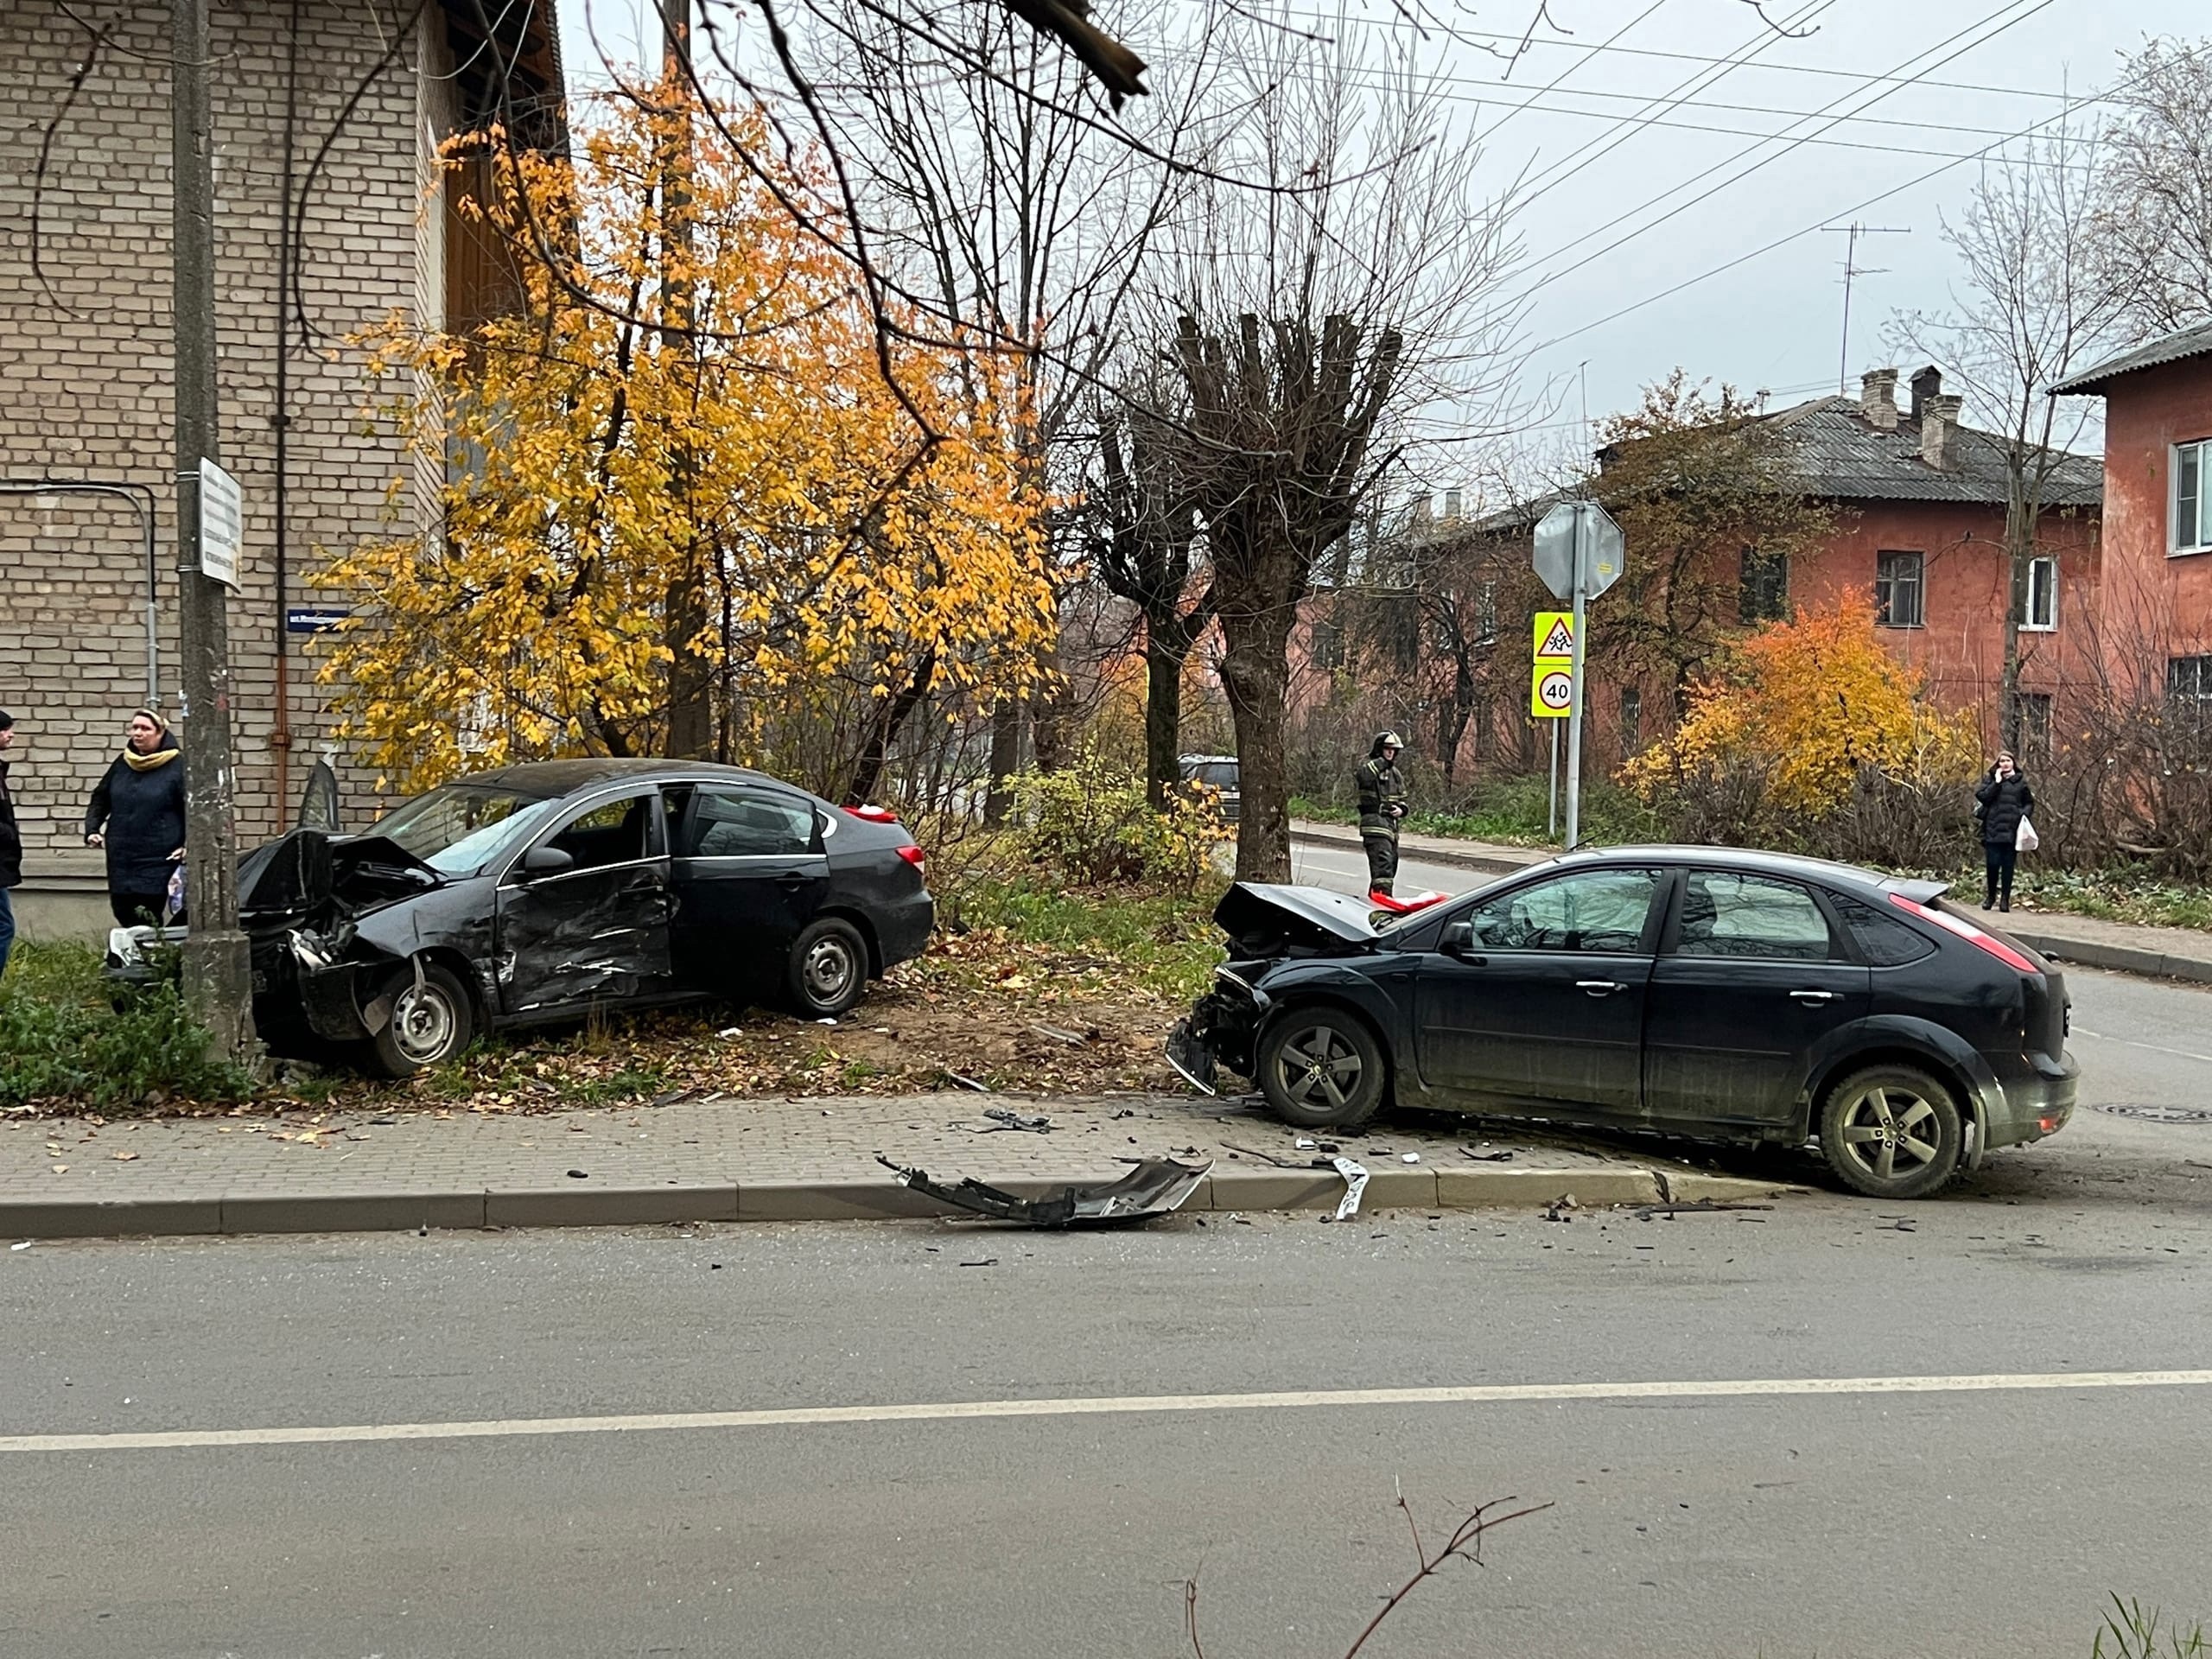 Один человек пострадал в ДТП на улице Терещенко в Твери - новости Афанасий